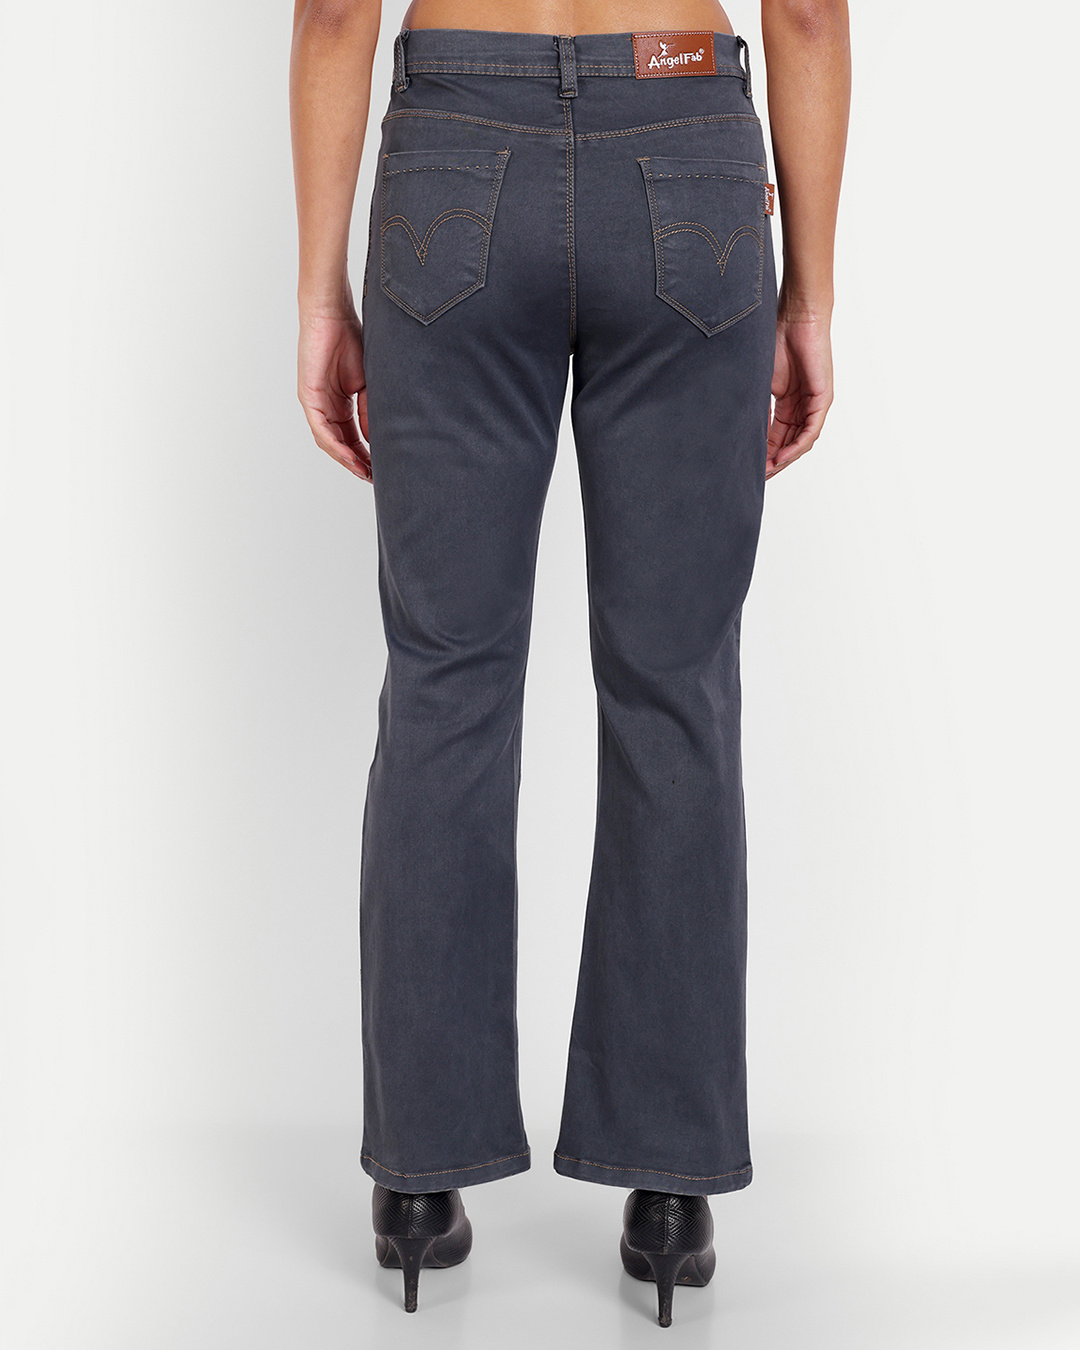 Buy Women's Grey Bootcut Jeans Online at Bewakoof